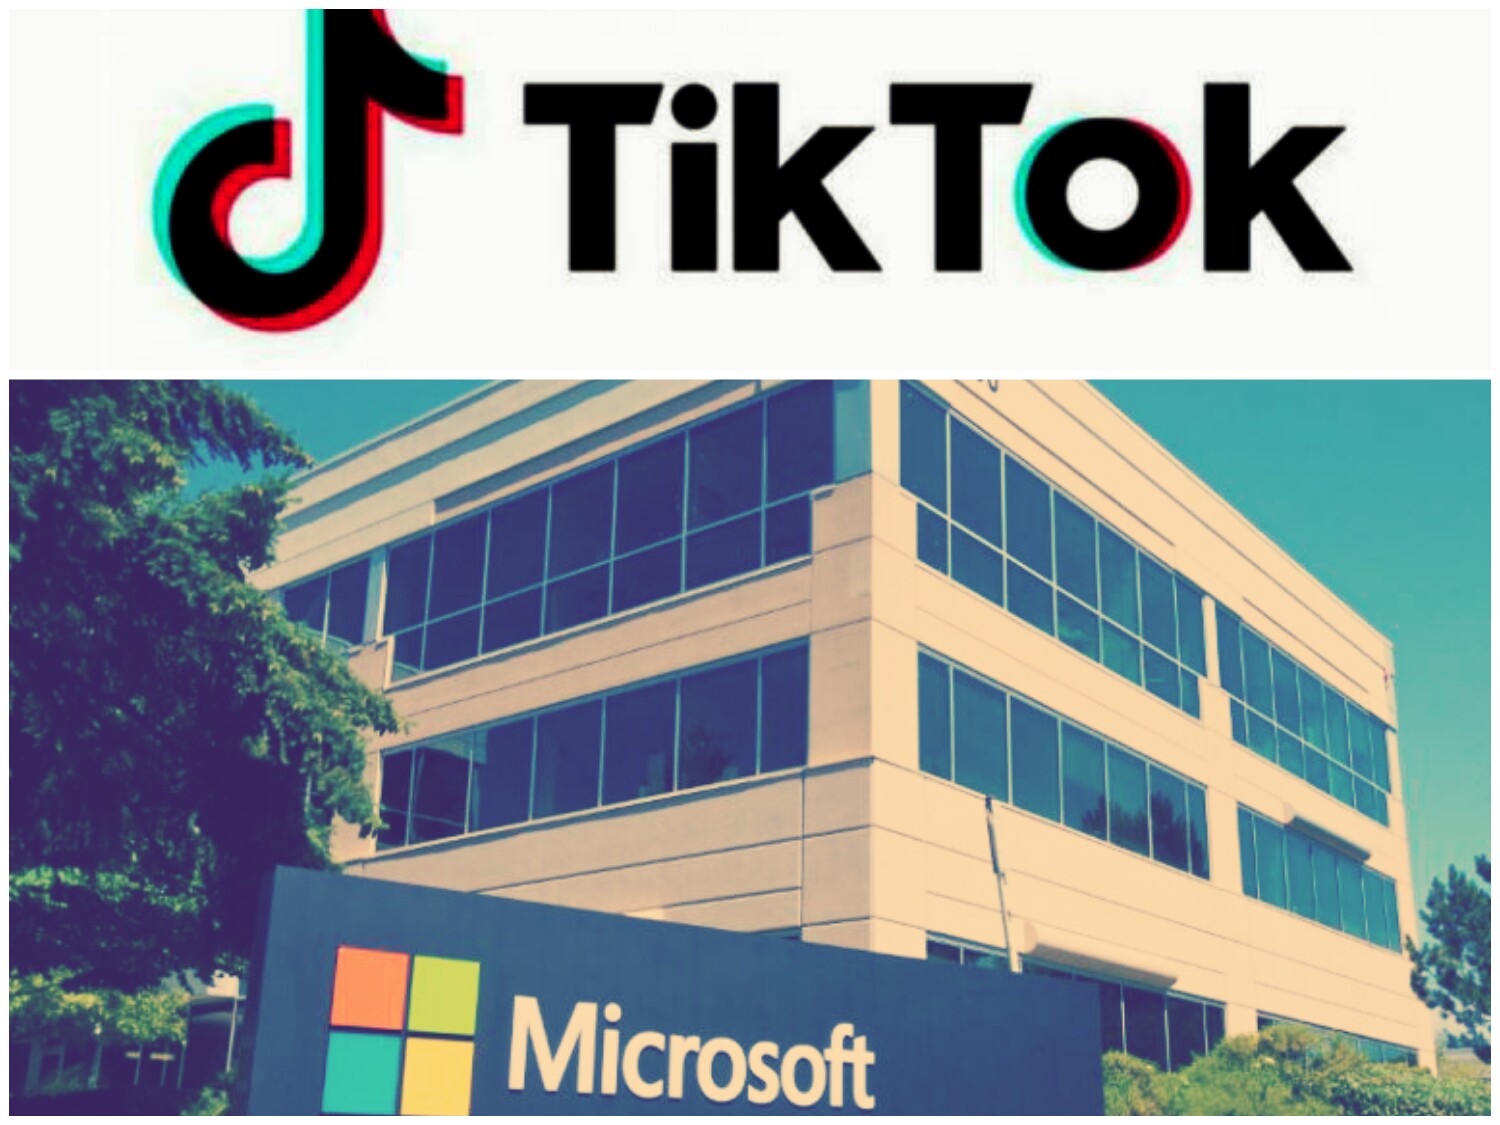 شركة مايكروسوفت الأمريكية إستحوذت على برنامج التيك توك في عالم التكنلوجيا والإنترنت